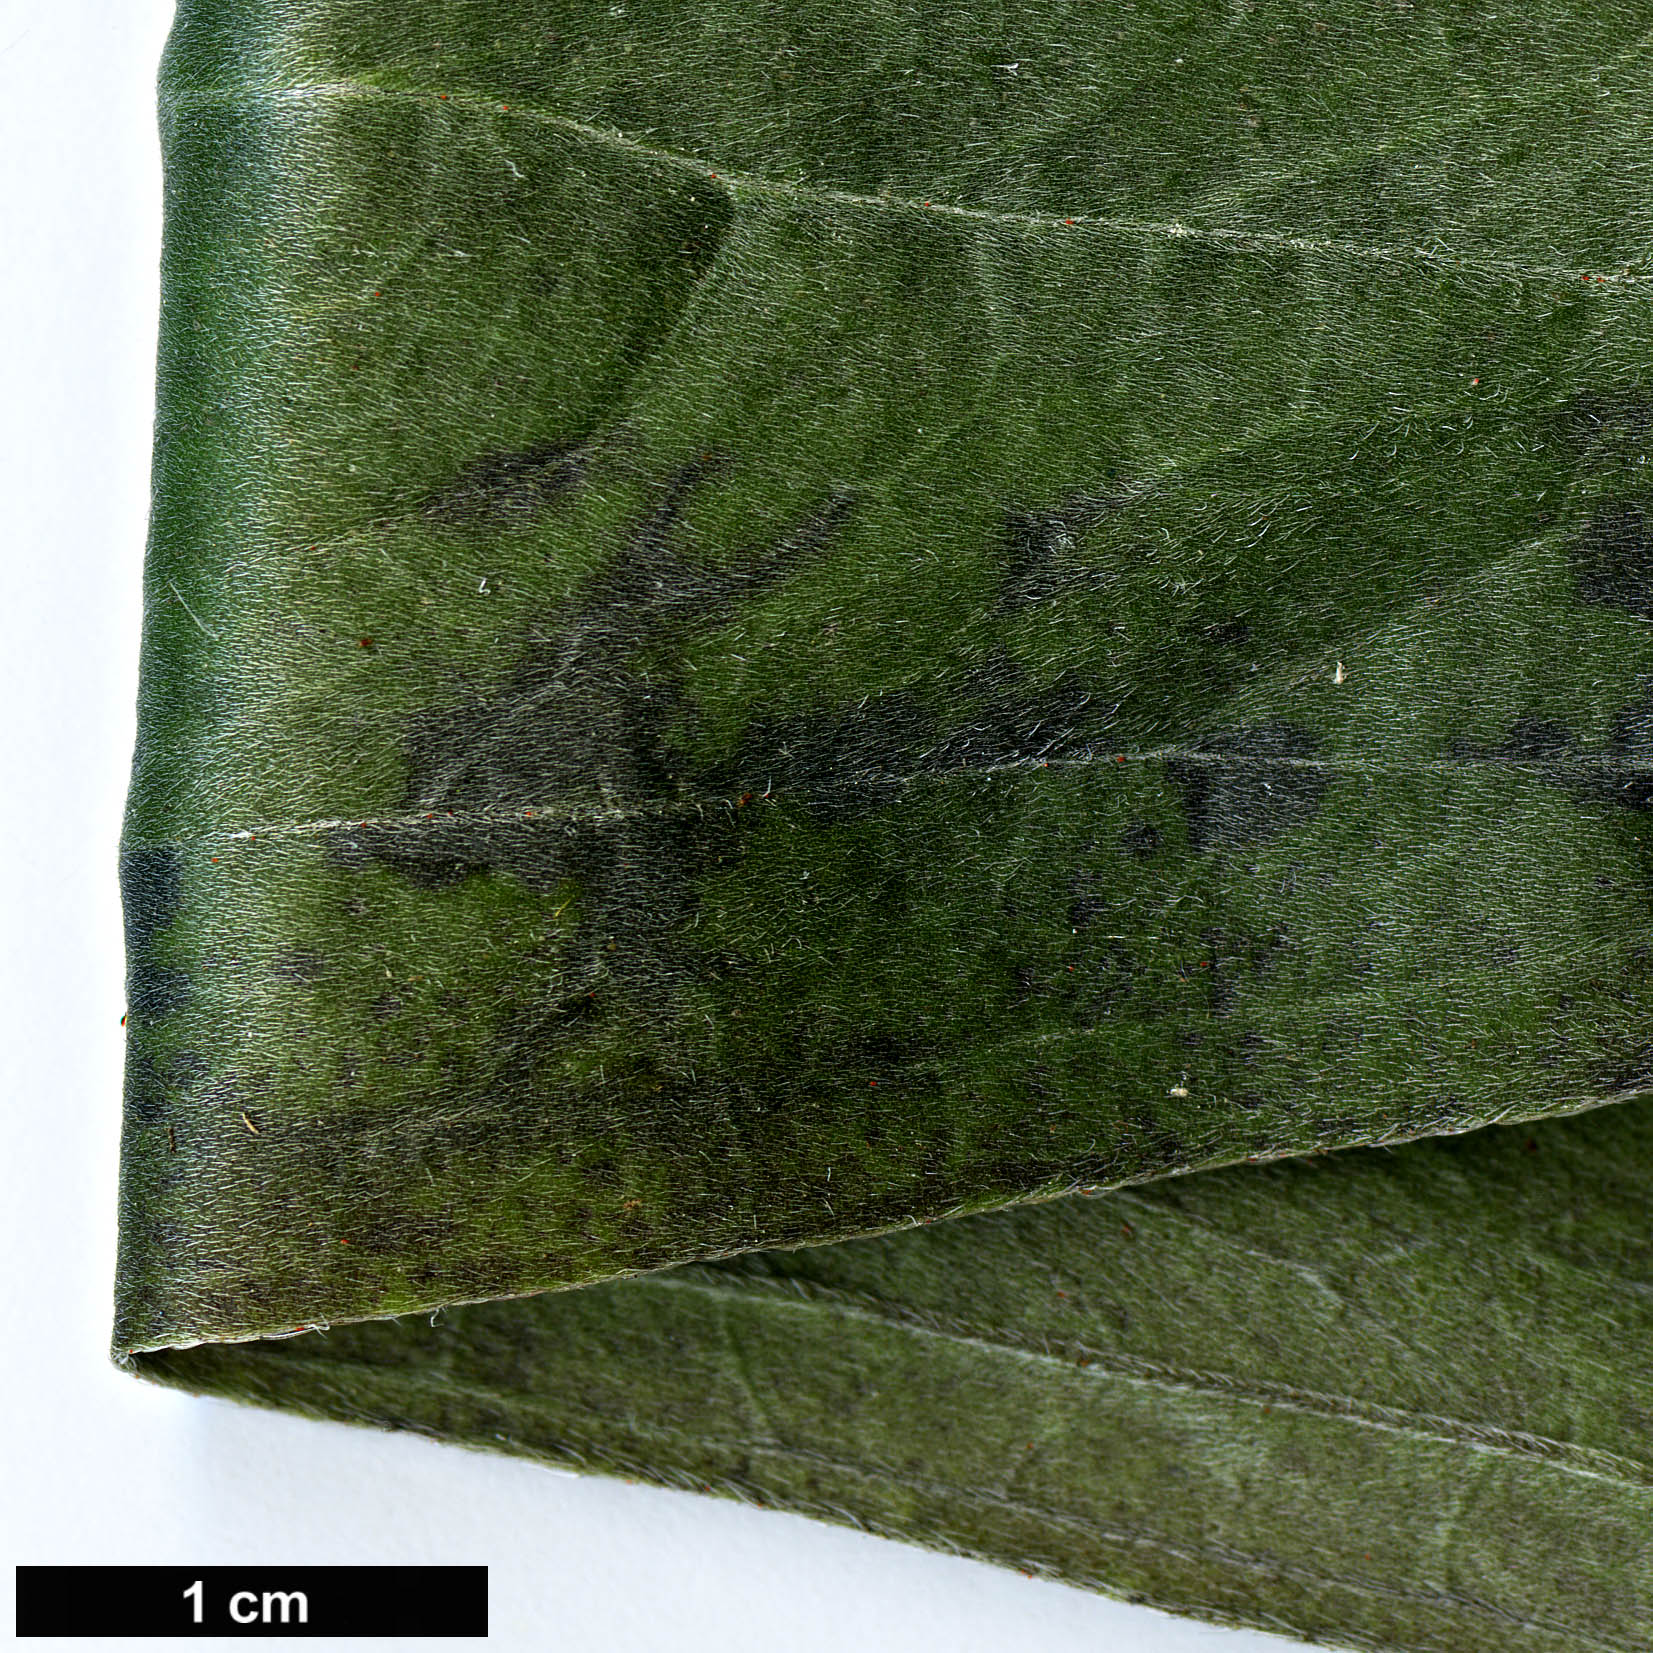 High resolution image: Family: Boraginaceae - Genus: Echium - Taxon: simplex